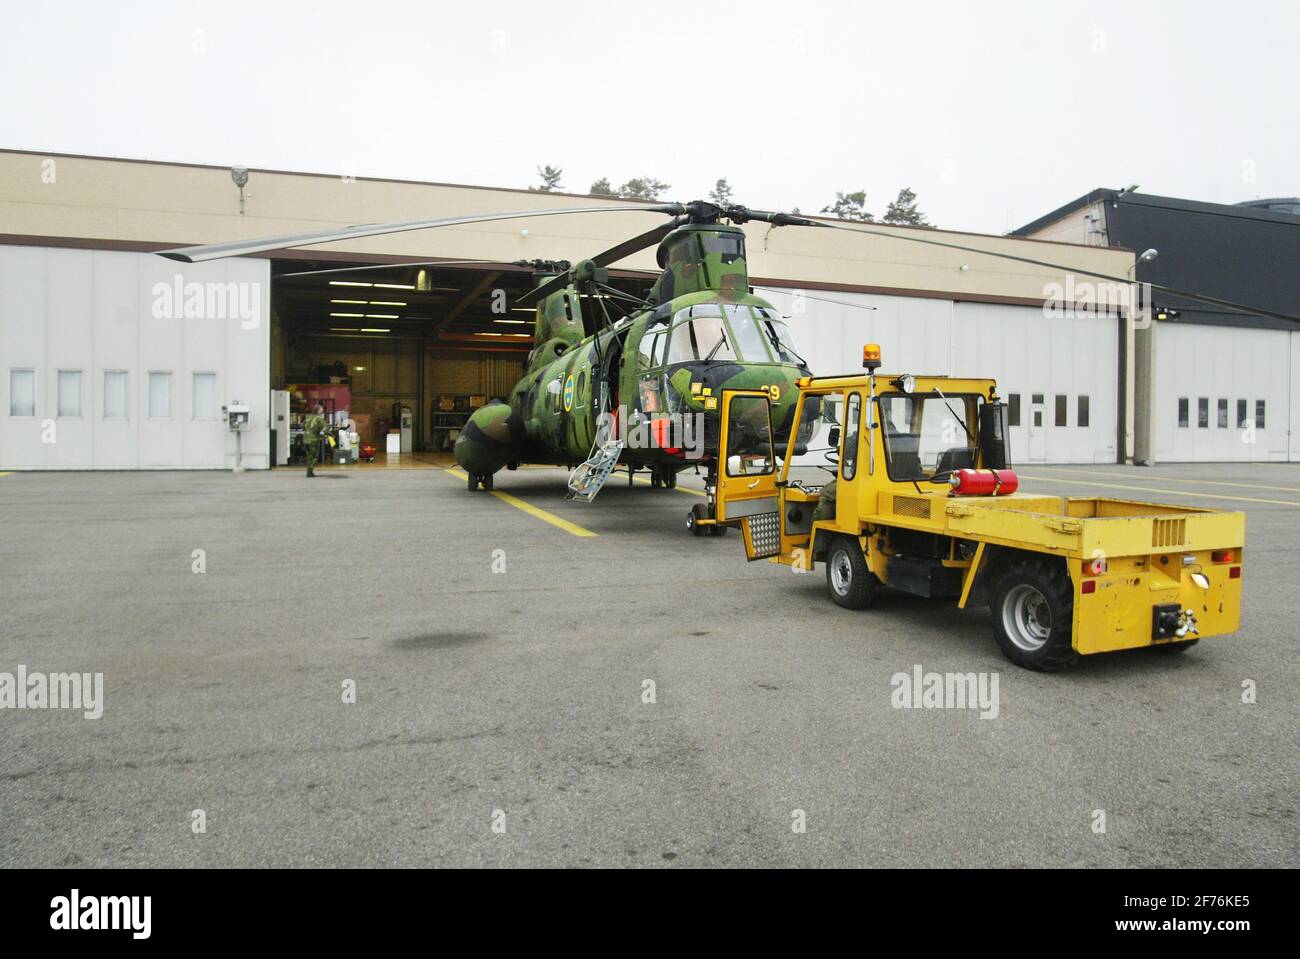 Der Hubschrauber 4 der schwedischen Luftwaffe, HKP 4, Boeing Vertol 107, wird aus dem Hangar des Marinestützpunktes Berga ausgerollt. HKP 4 wurde bei U-Boot-Jagden und Rettungseinsätzen wie der Estonia-Katastrophe eingesetzt. Stockfoto